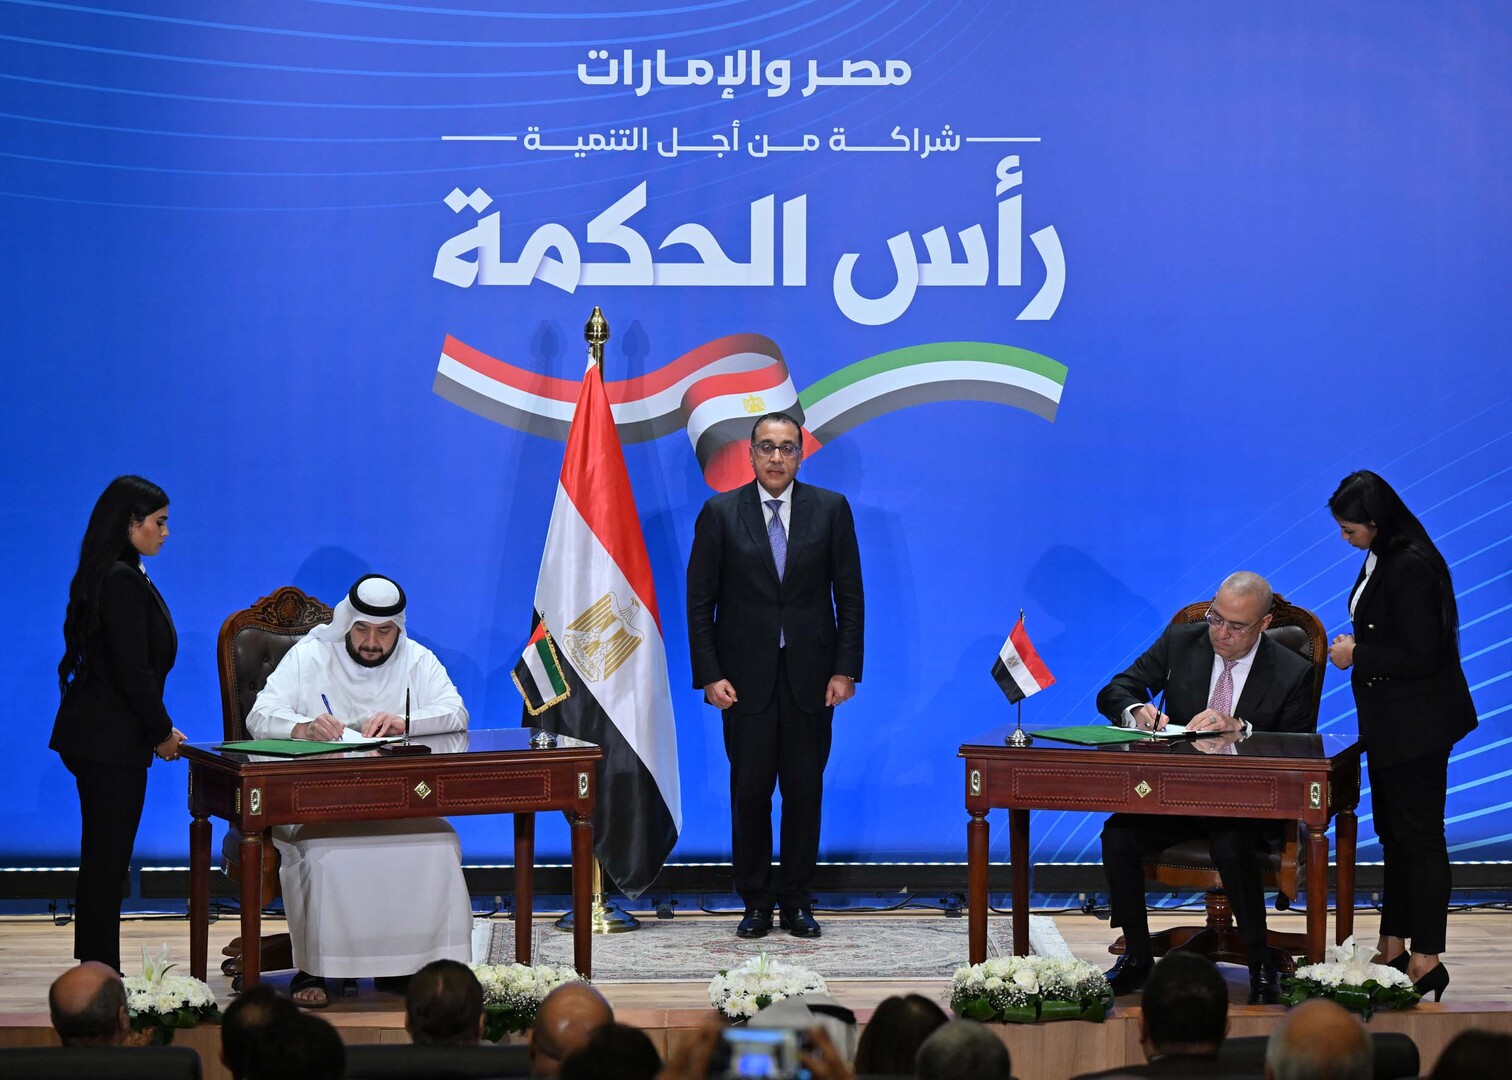 تصريحات رئيس الوزراء المصري الجديدة حول مشروع 